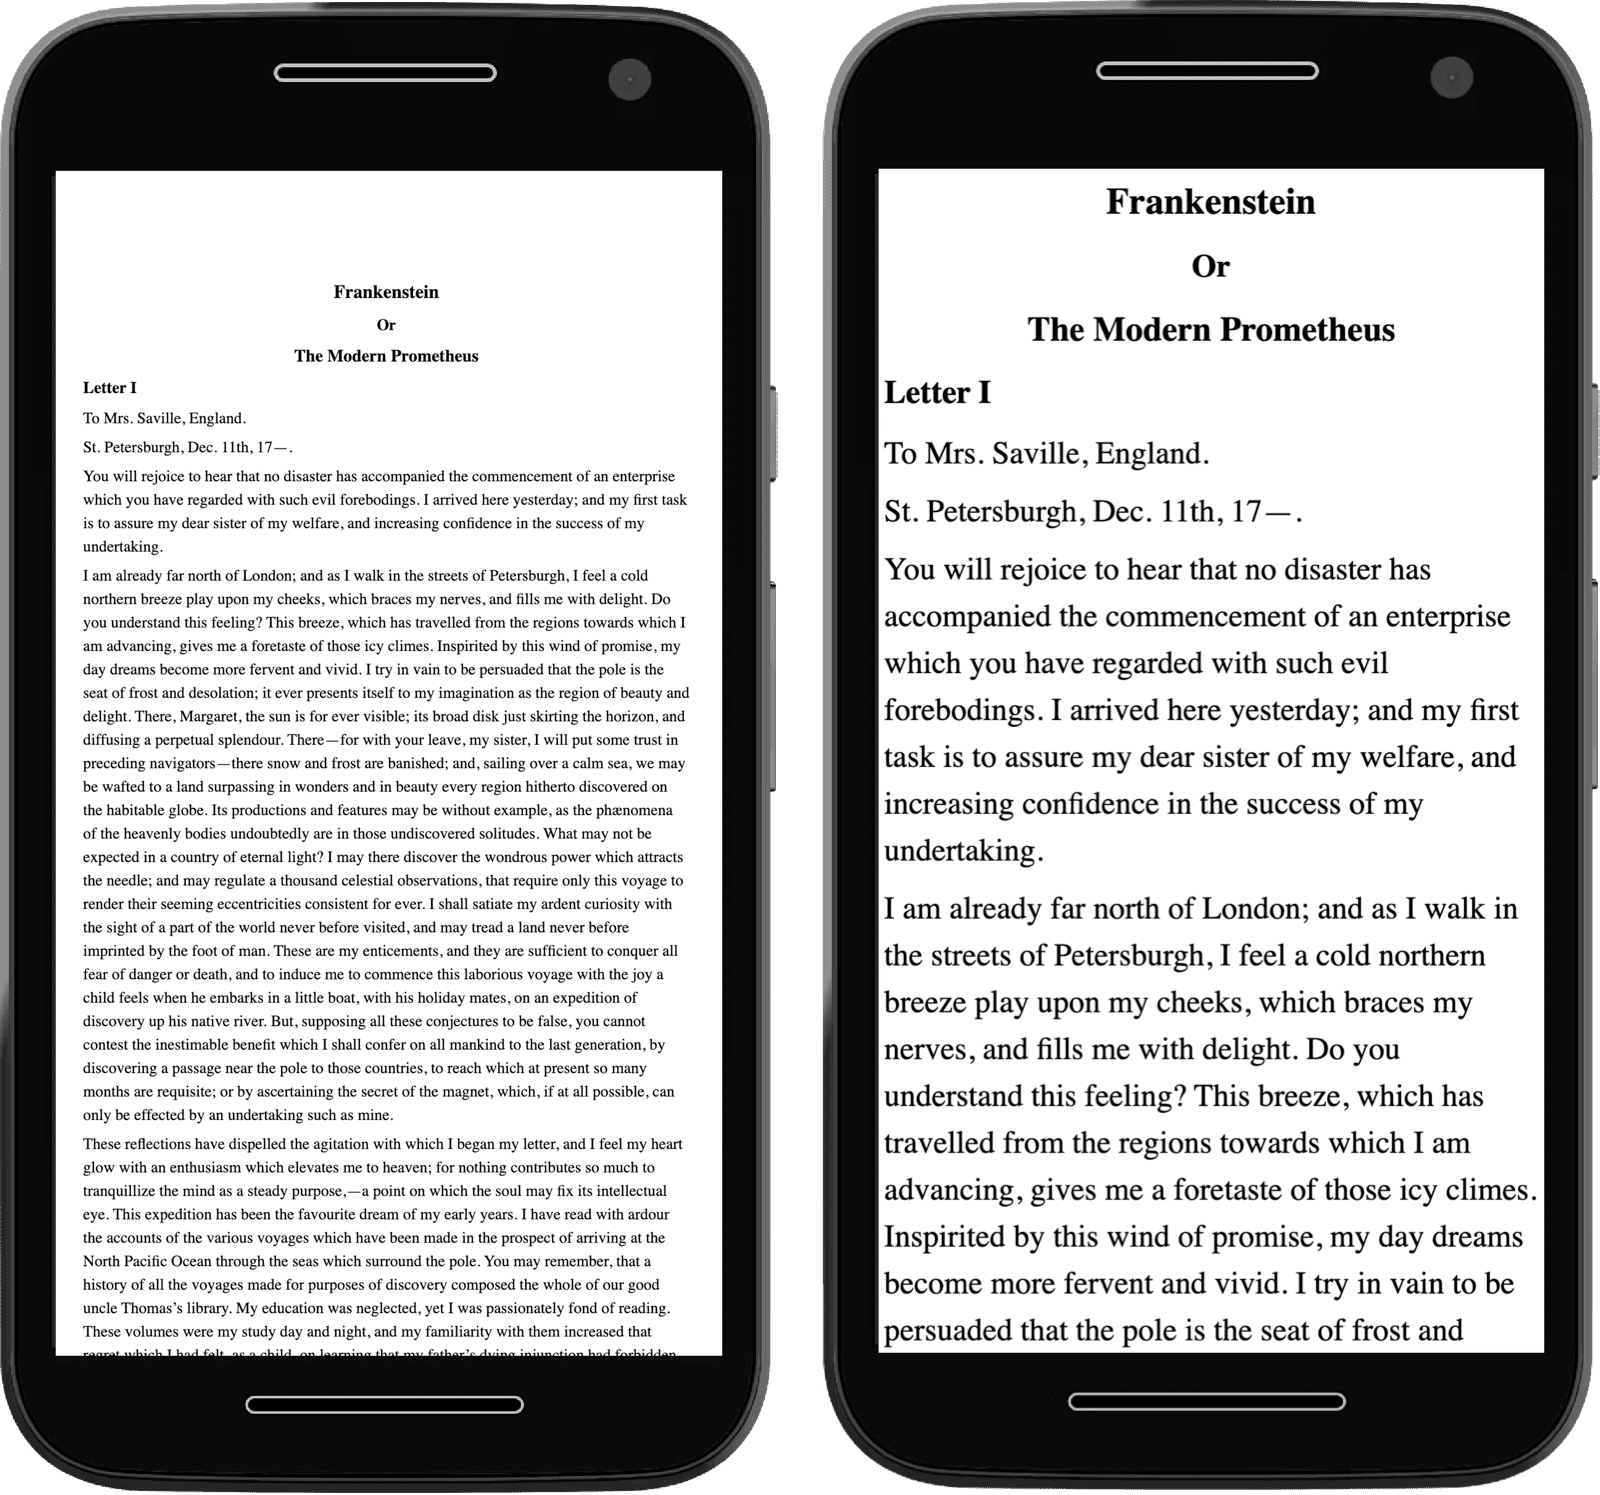 Imágenes de dos teléfonos celulares que contienen texto, uno aparece alejado debido a que no se implementó la metaetiqueta.